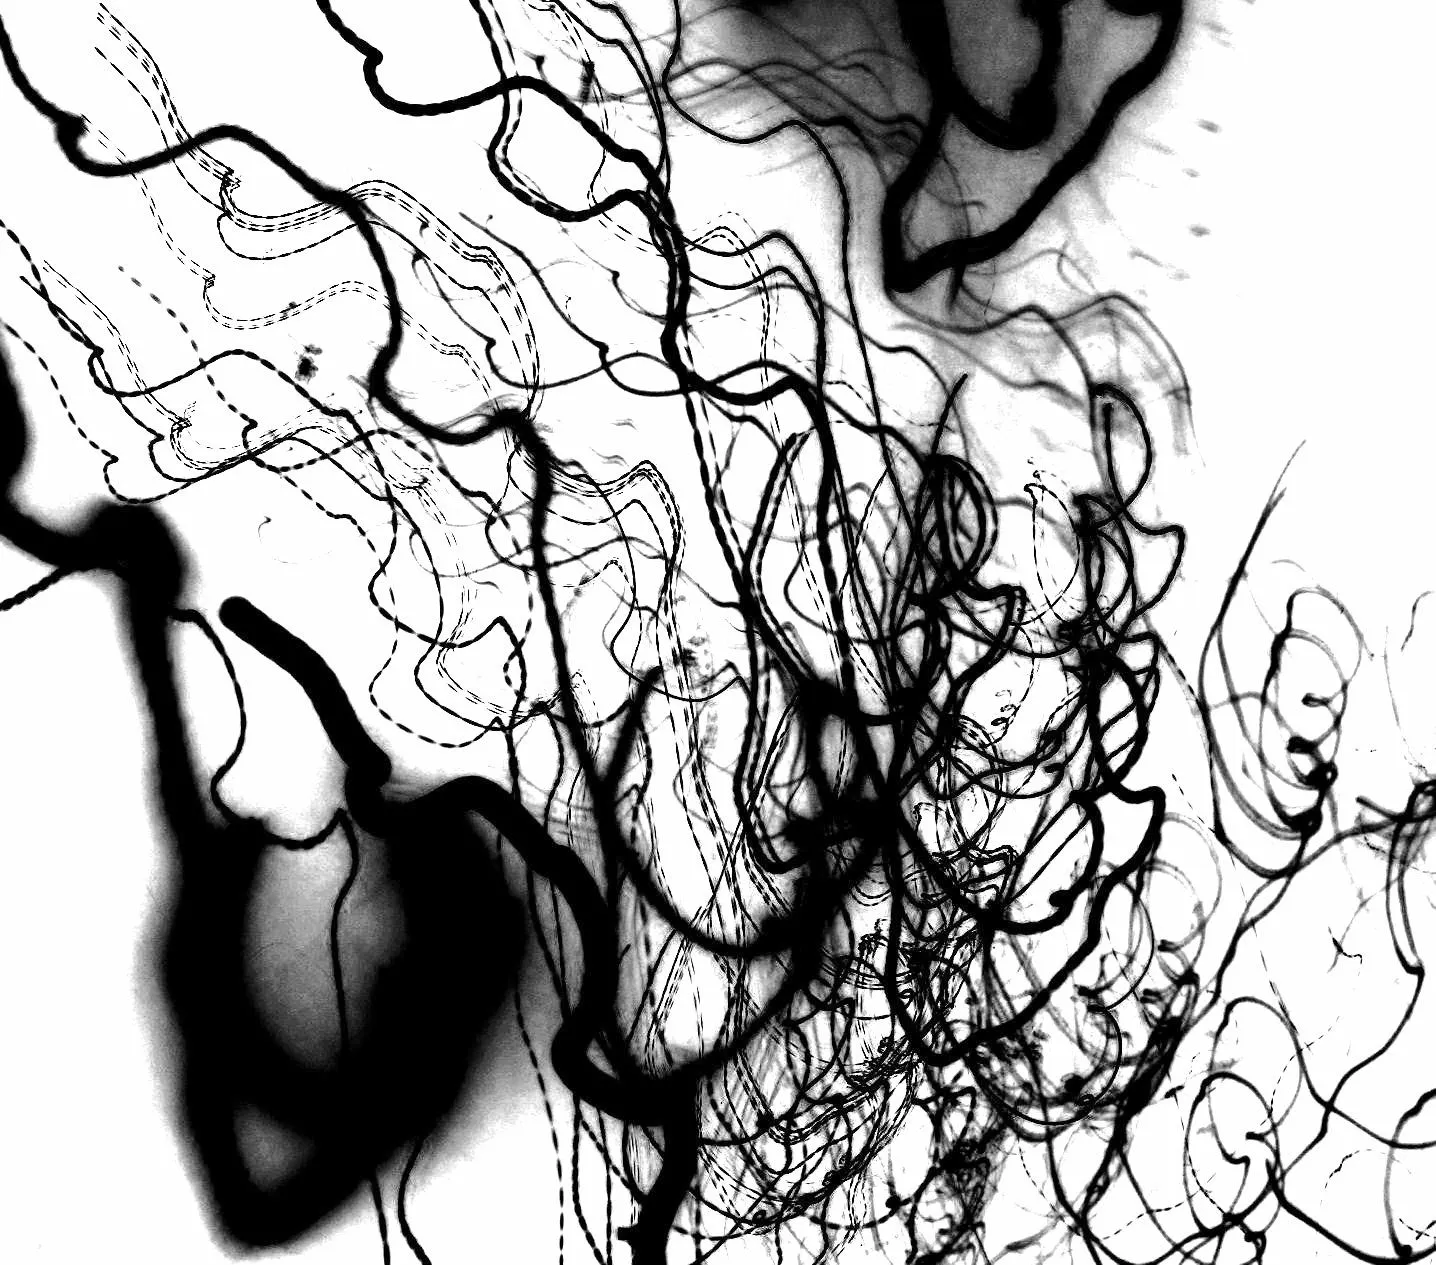 DanzaElArte: Fotografías abstractas en blanco y negro